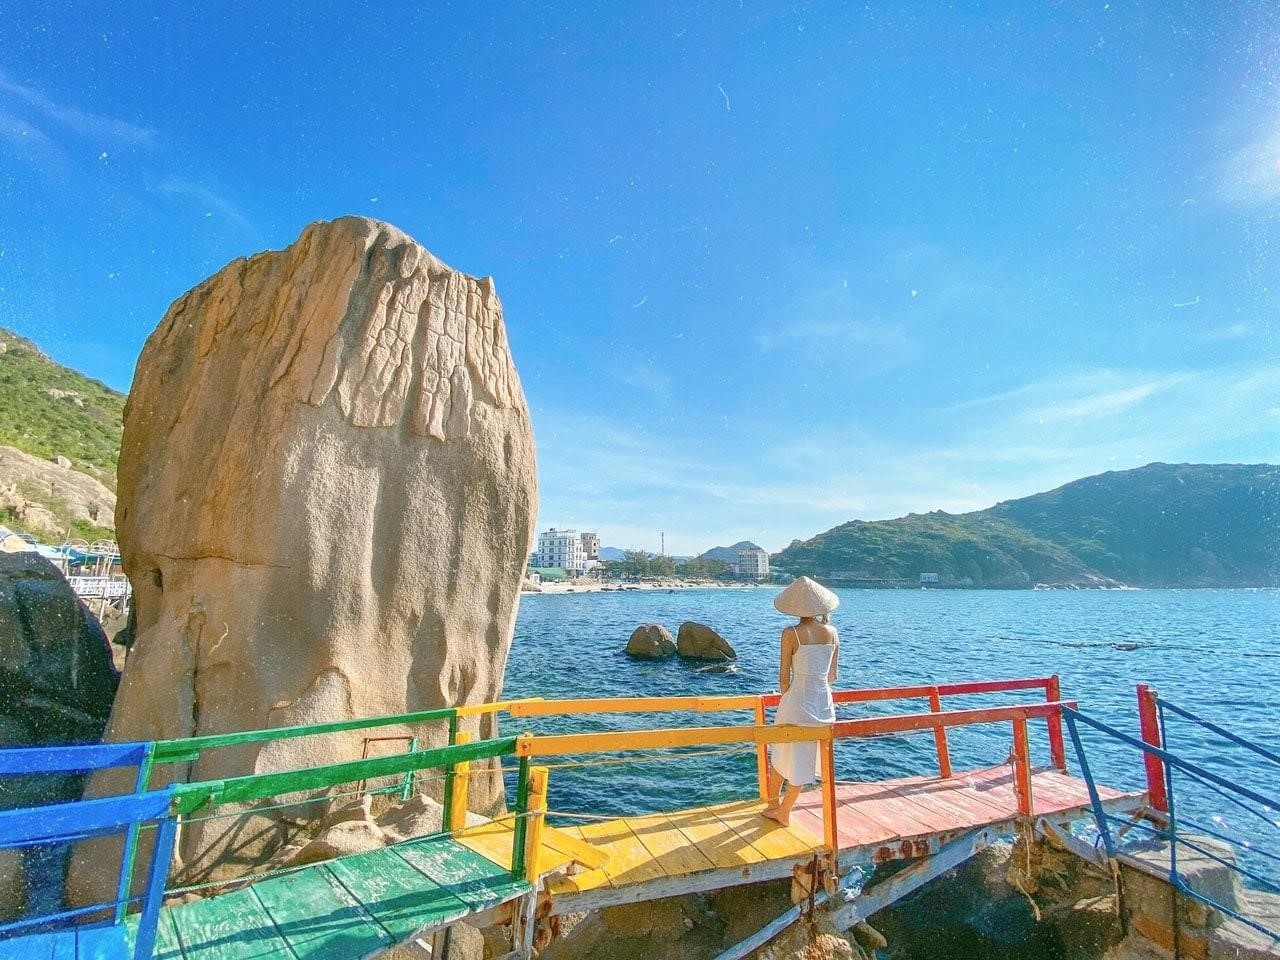 Đảo Bình Ba là một hòn đảo thuộc tỉnh Khánh Hòa, nổi tiếng với cảnh đẹp hoang sơ, bãi biển trong xanh và các bãi tắm tuyệt vời. Nơi đây còn có nguồn tài nguyên hải sản phong phú và là điểm đến lý tưởng cho các hoạt động du lịch, lặn biển và thưởng thức hải sản tươi ngon.